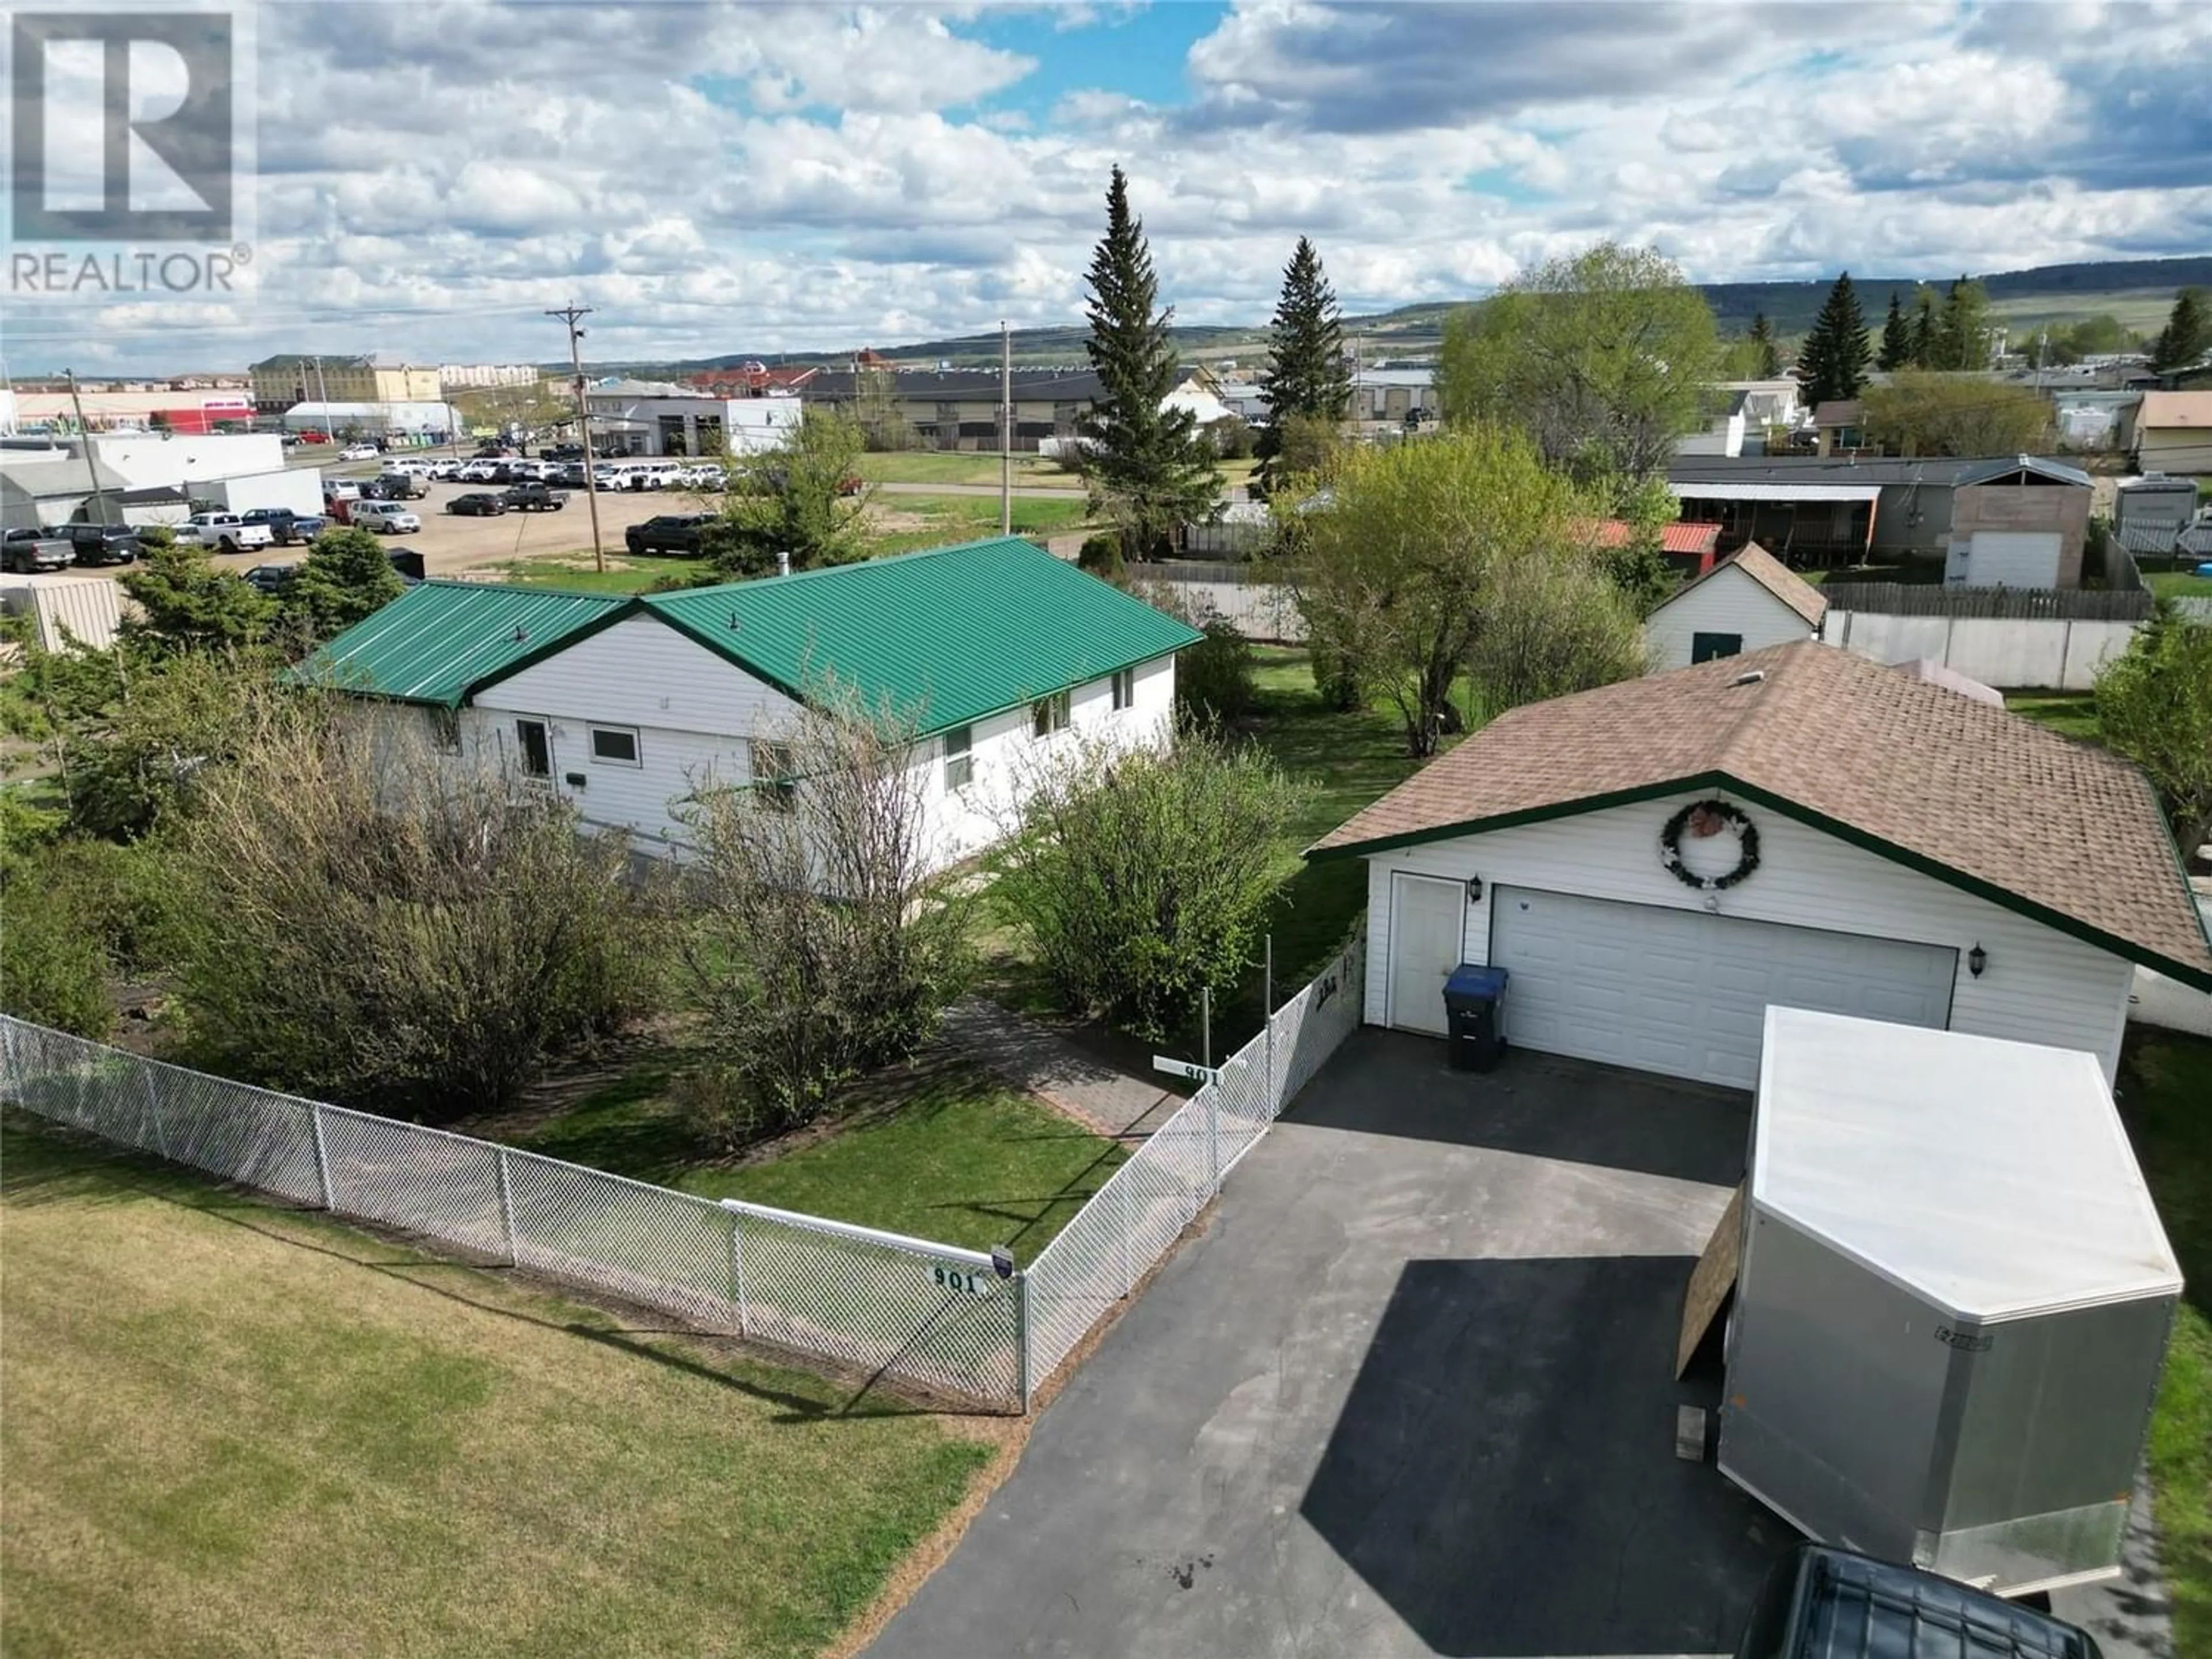 Fenced yard for 905 118 Avenue, Dawson Creek British Columbia V1G3H2